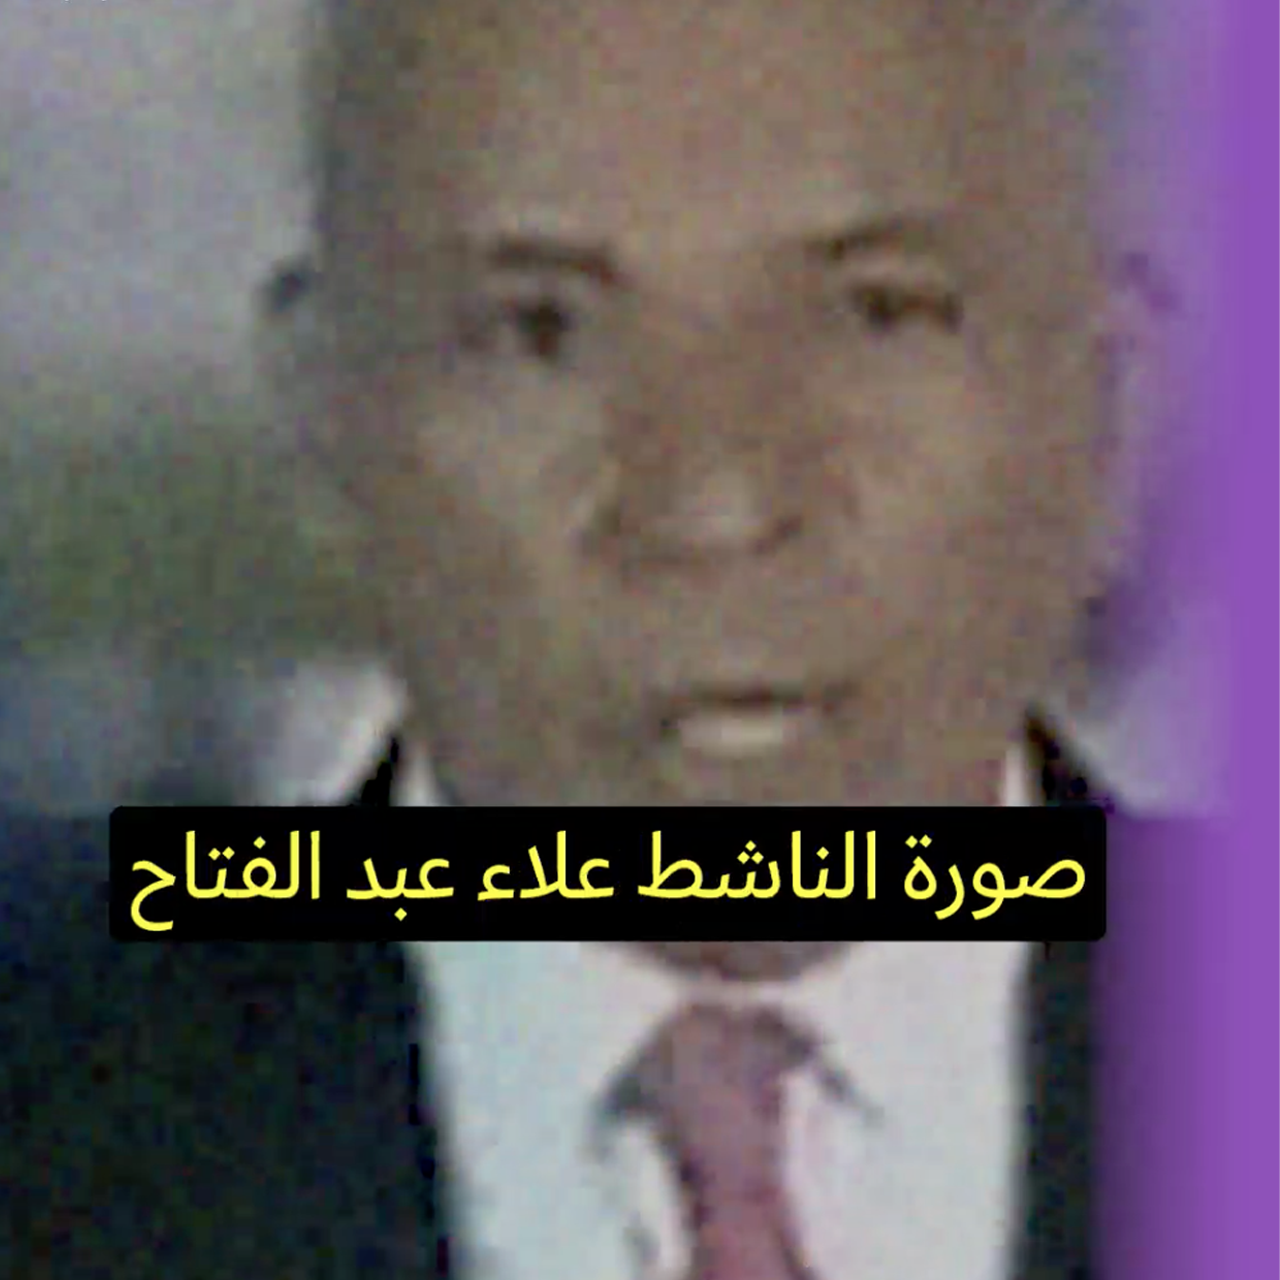 نظام السيسي في مواجهة علاء عبد الفتاح